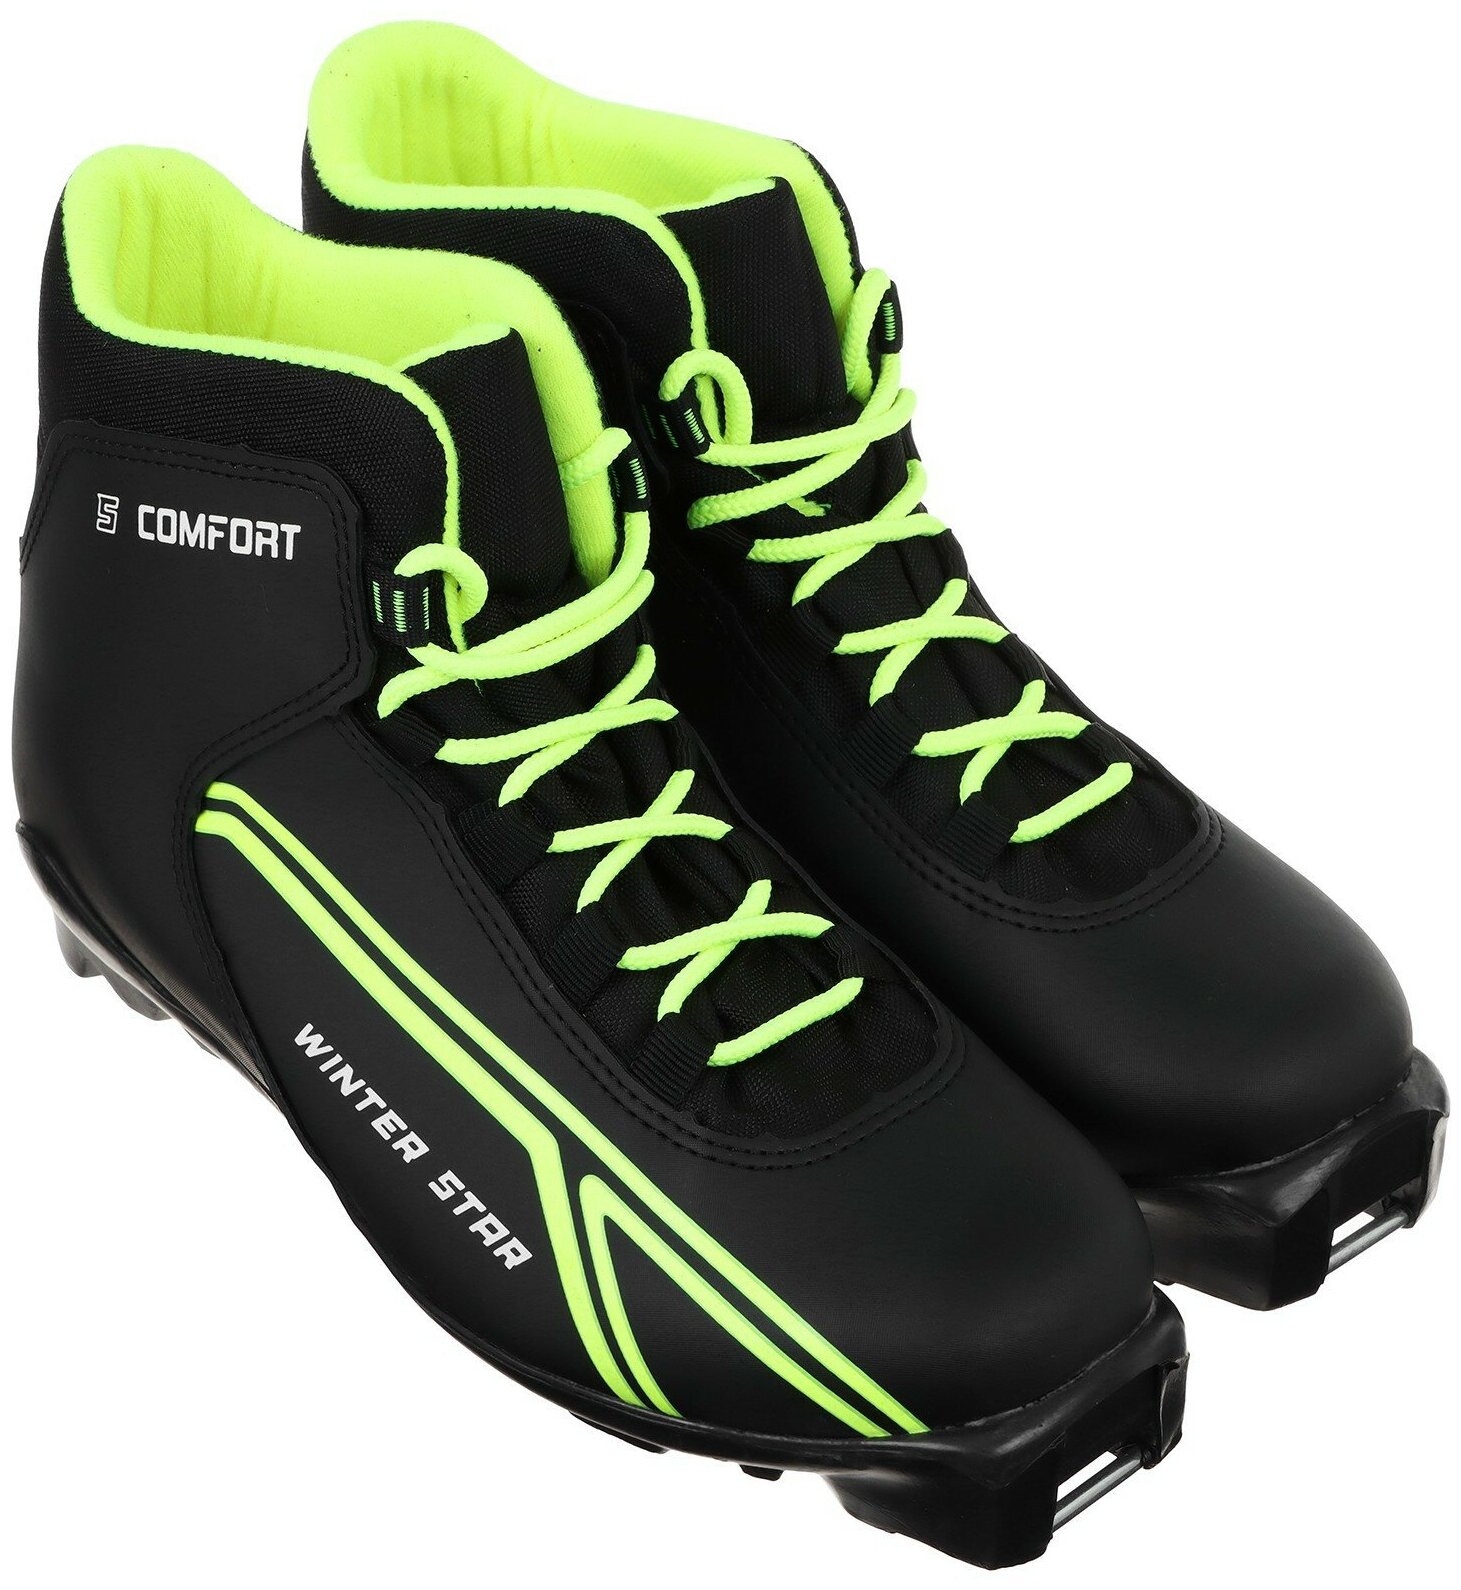 Ботинки лыжные Winter Star "Сomfort", SNS, искусственная кожа, размер 45, цвет чёрный, лайм-неон